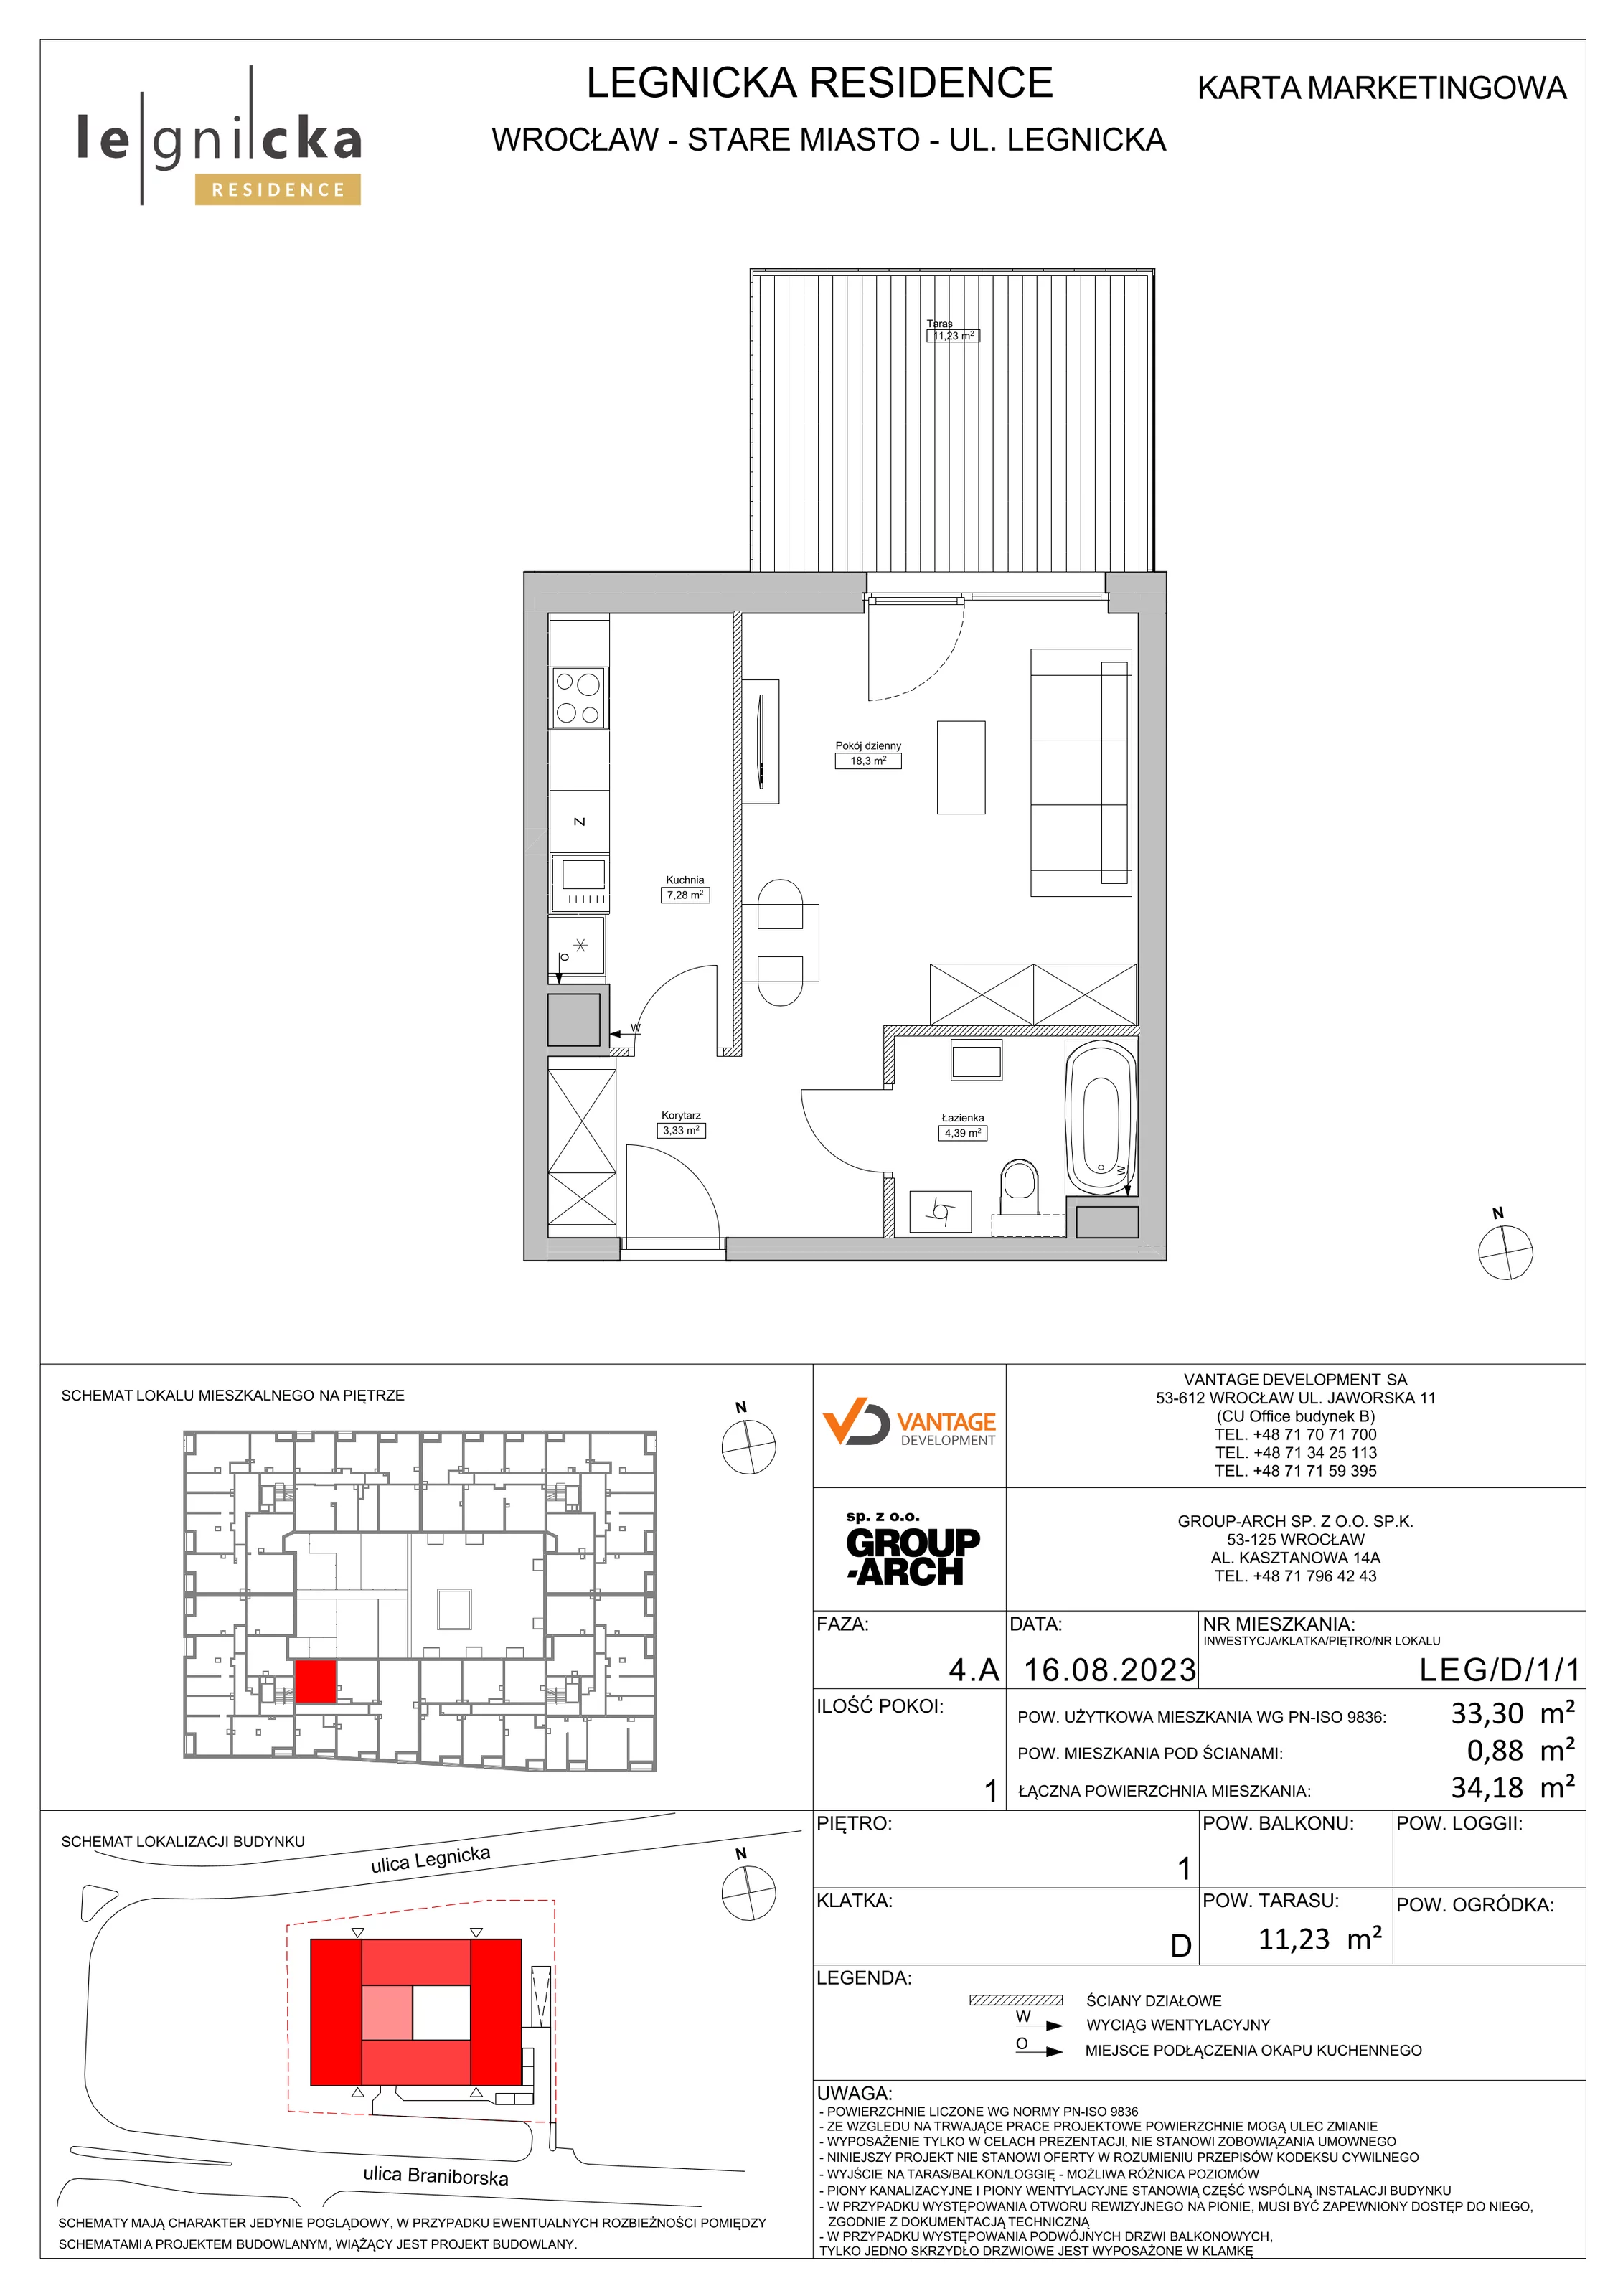 Apartament inwestycyjny 33,30 m², piętro 1, oferta nr LEG/D/1/1, Legnicka Residence, Wrocław, Szczepin, ul. Legnicka 36